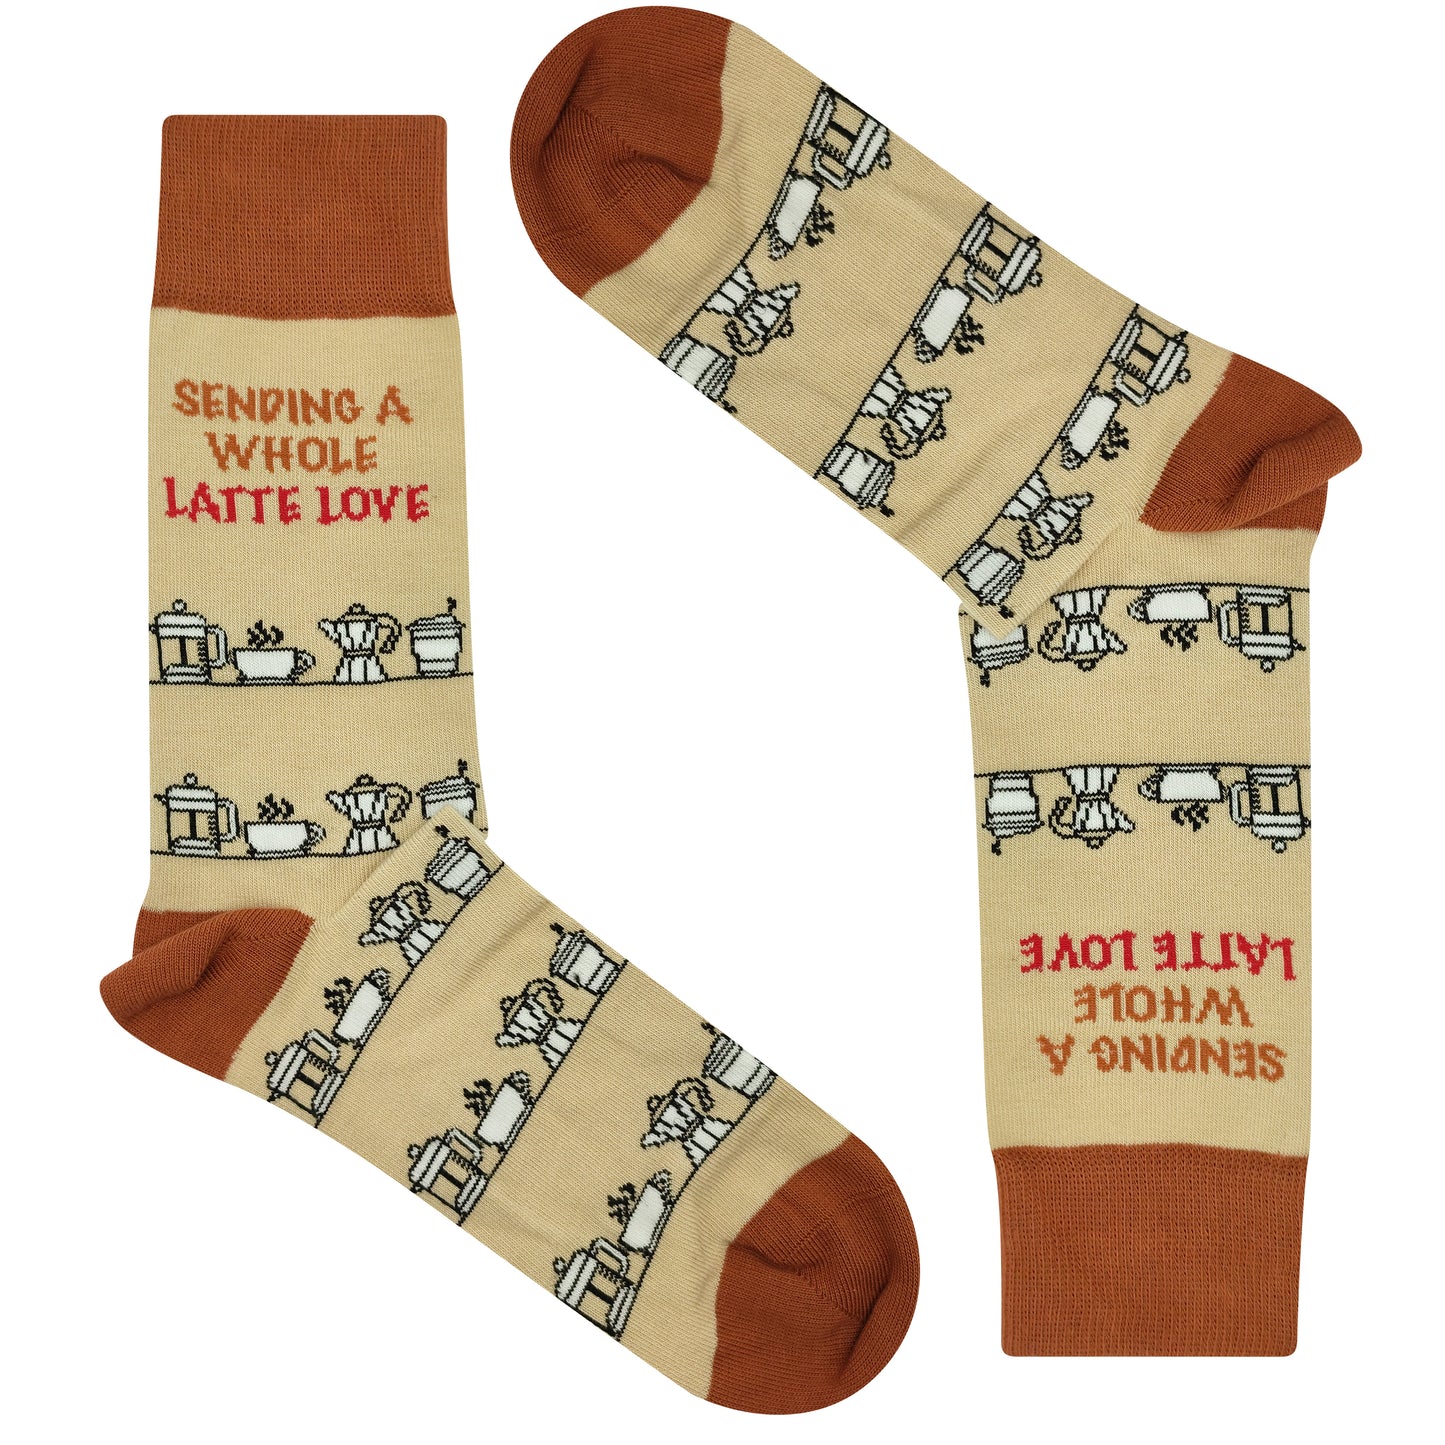 Sending A Whole Latte Love Socks